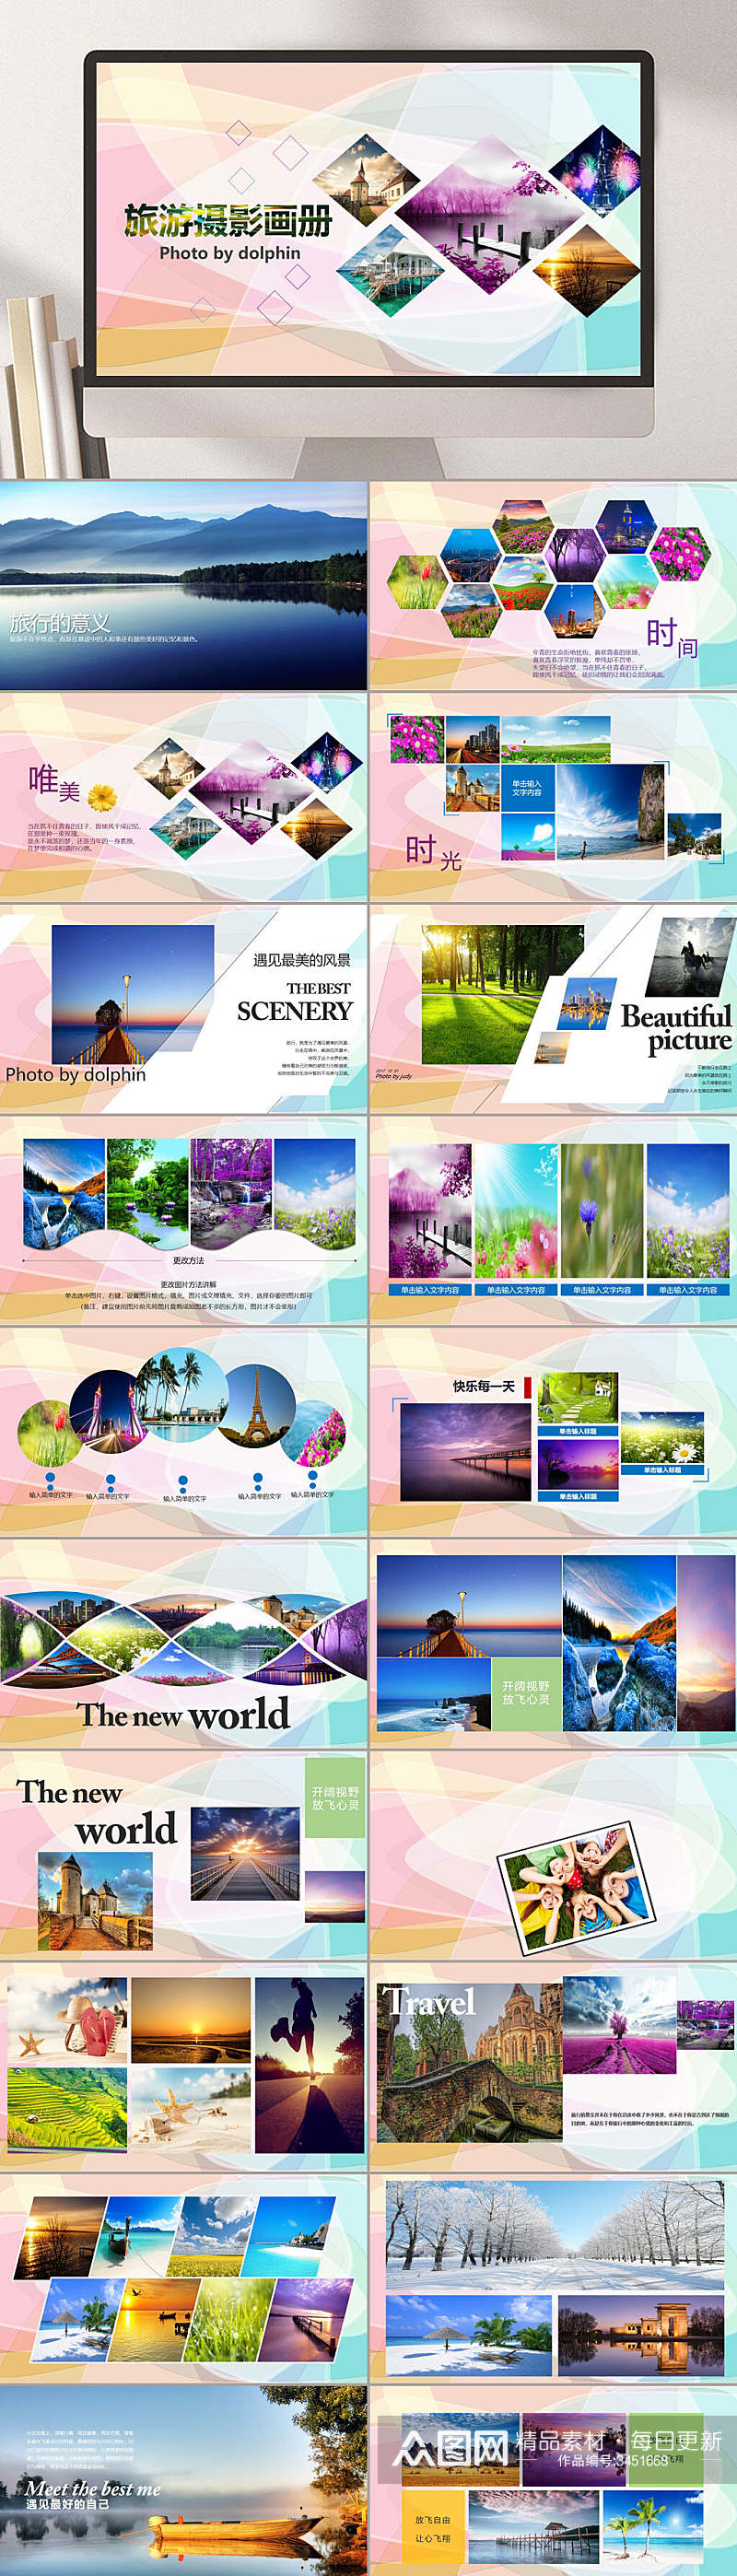 旅游摄影画册学习PPT素材